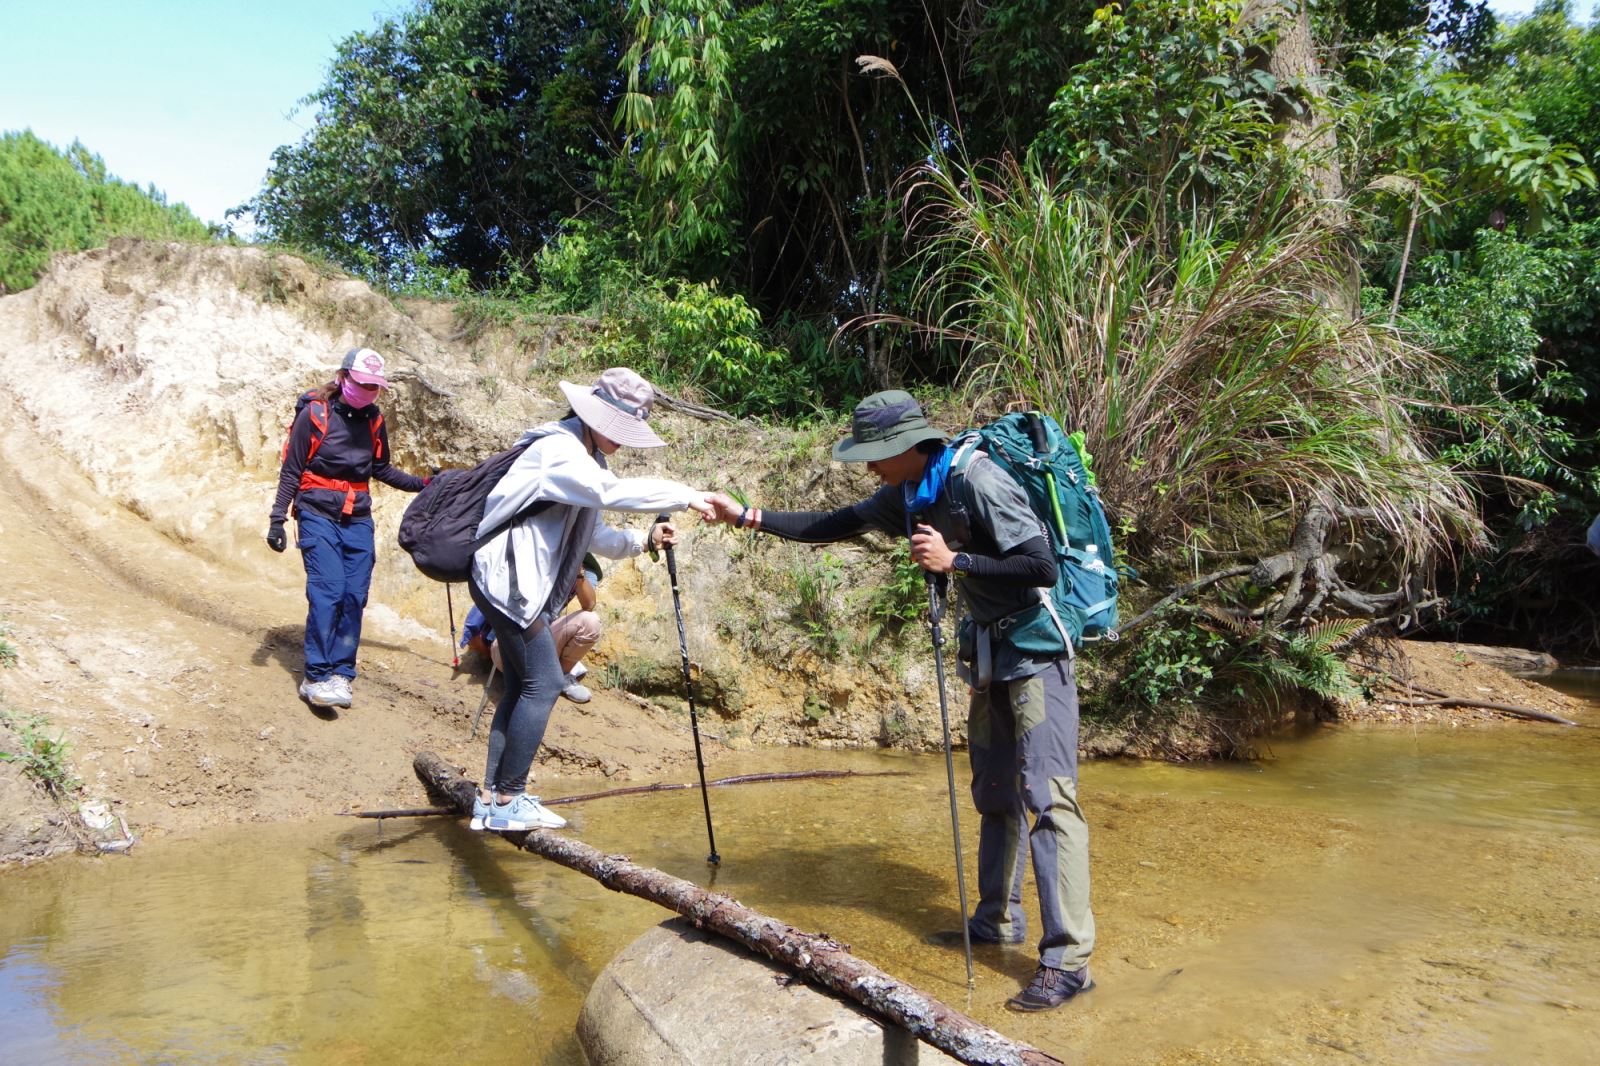 Sự an toàn của những vị khách được các tour guide trekking quan tâm hàng đầu.